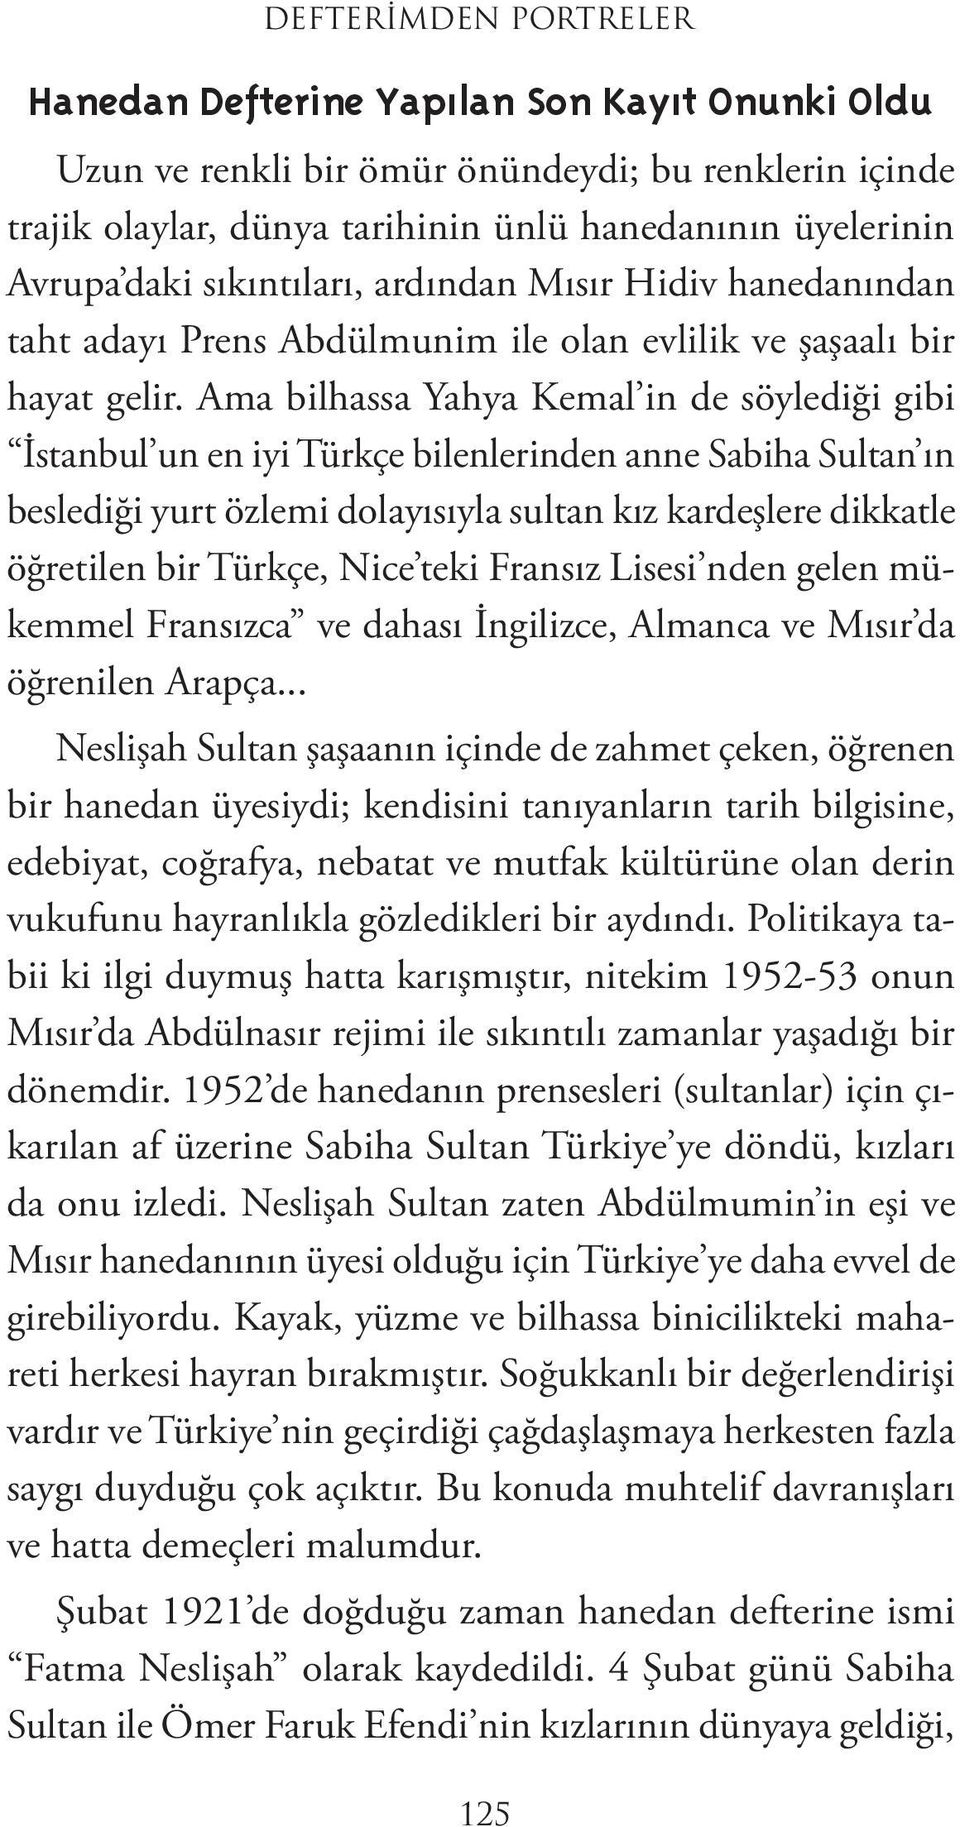 Ama bilhassa Yahya Kemal in de söylediği gibi İstanbul un en iyi Türkçe bilenlerinden anne Sabiha Sultan ın beslediği yurt özlemi dolayısıyla sultan kız kardeşlere dikkatle öğretilen bir Türkçe, Nice